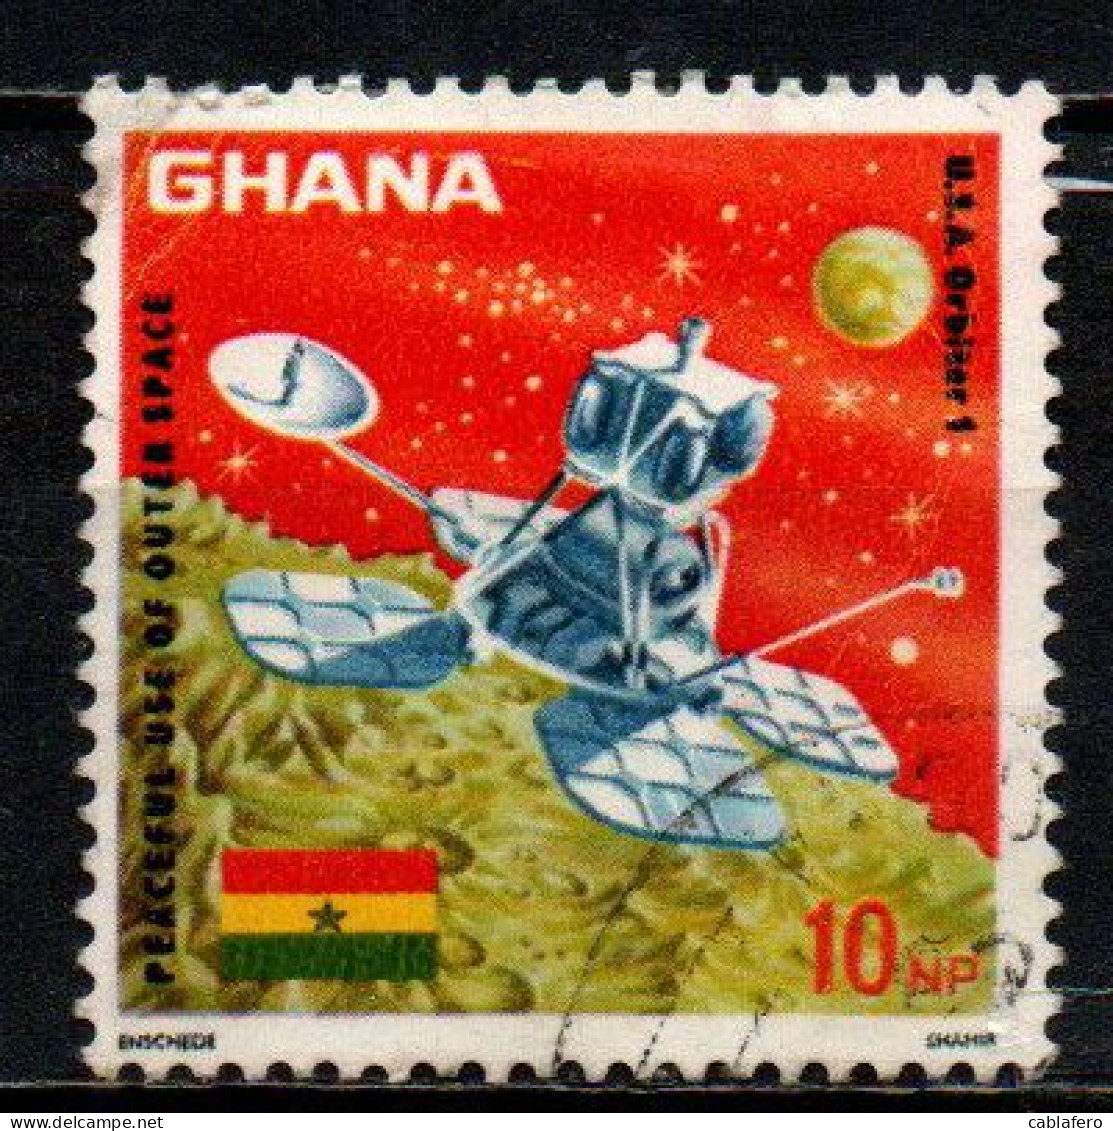 GHANA - 1967 - Orbiter 1 Landing On Moon - USATO - Ghana (1957-...)